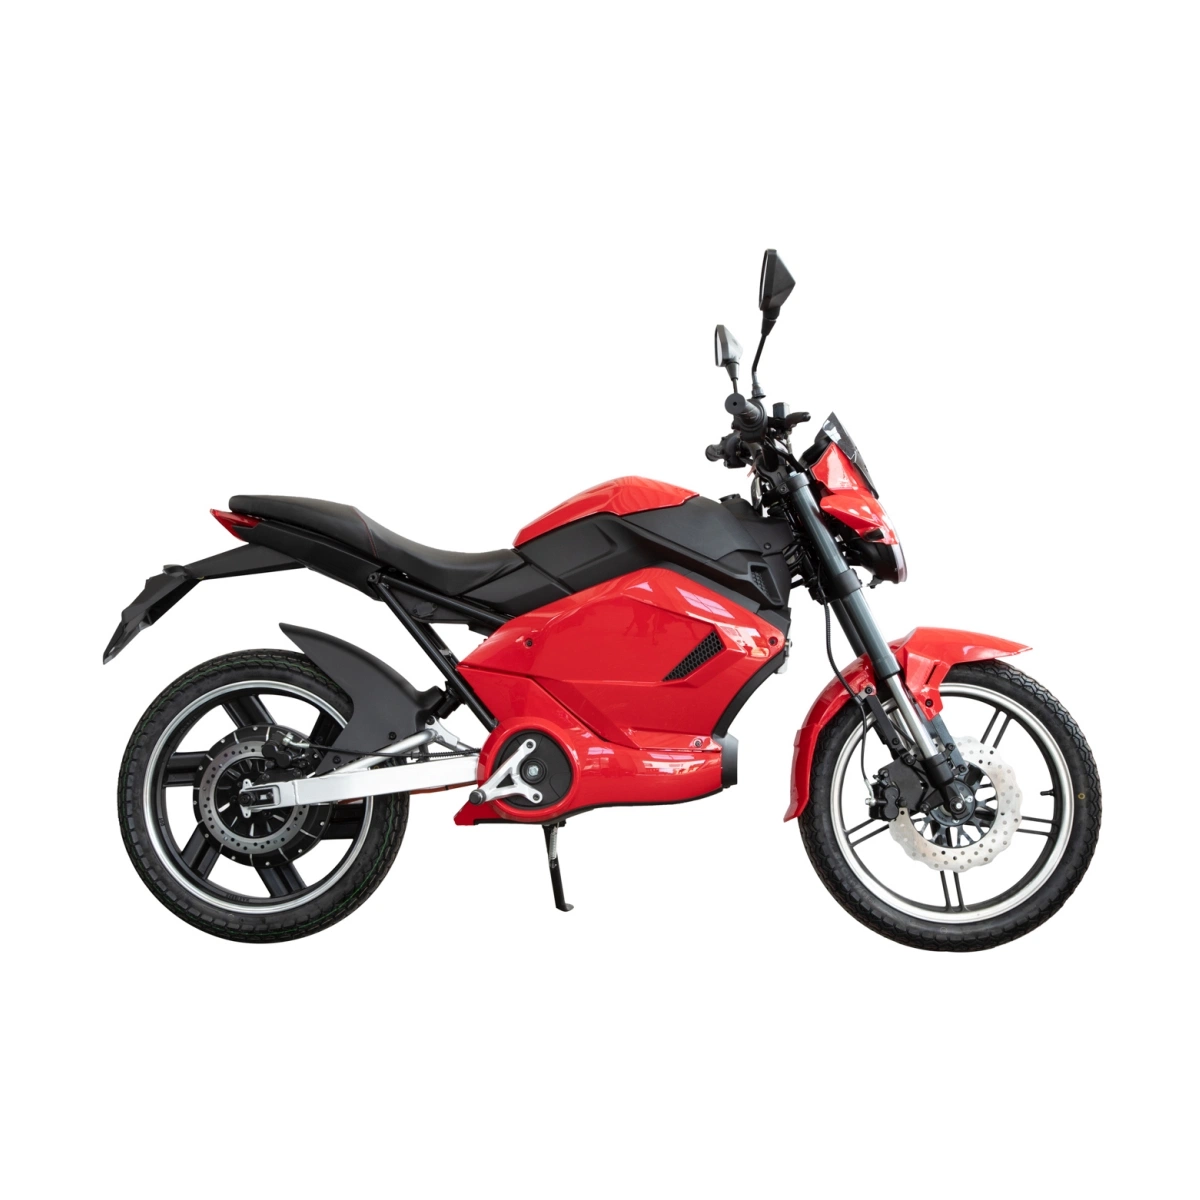 Novo design de fábrica na China CEE Racing Motociclo eléctrico, Bateria de Lítio Electric Moto, e veículo, poderoso Sport moto, Sportbike, Street Bike